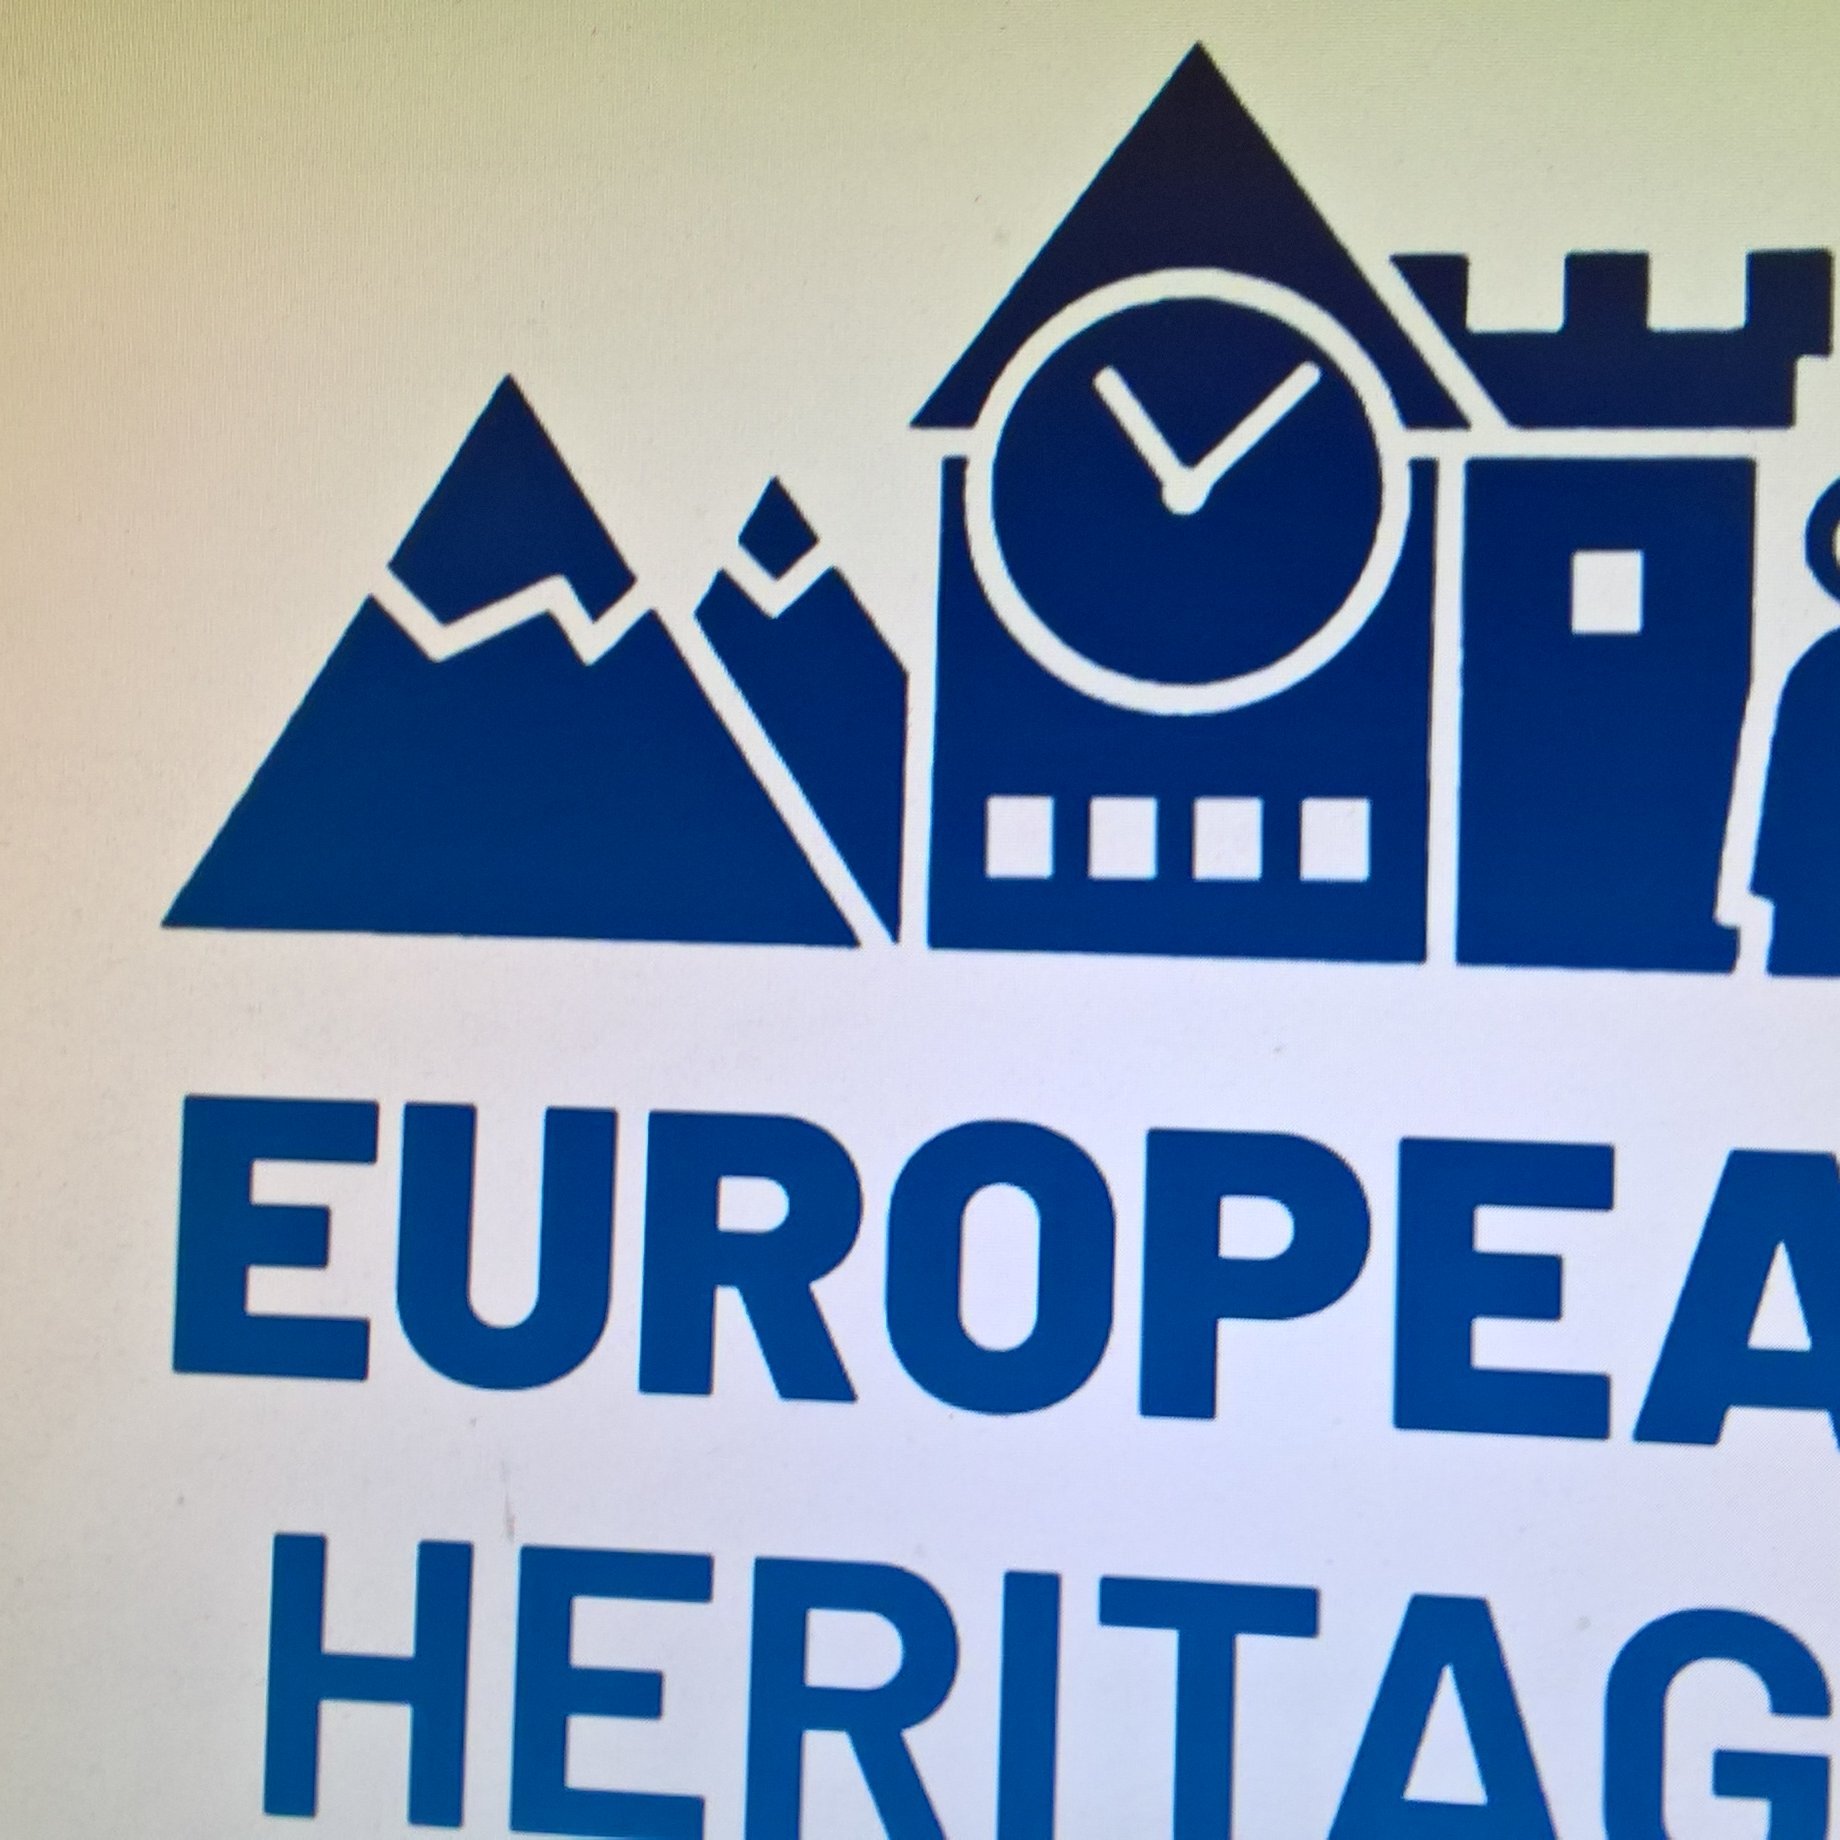 Social Media Volunteers for Heritage, an initiative of European Heritage Volunteers #CreativeEurope #HeritageTimes publishing #EuropeanHeritageTimes